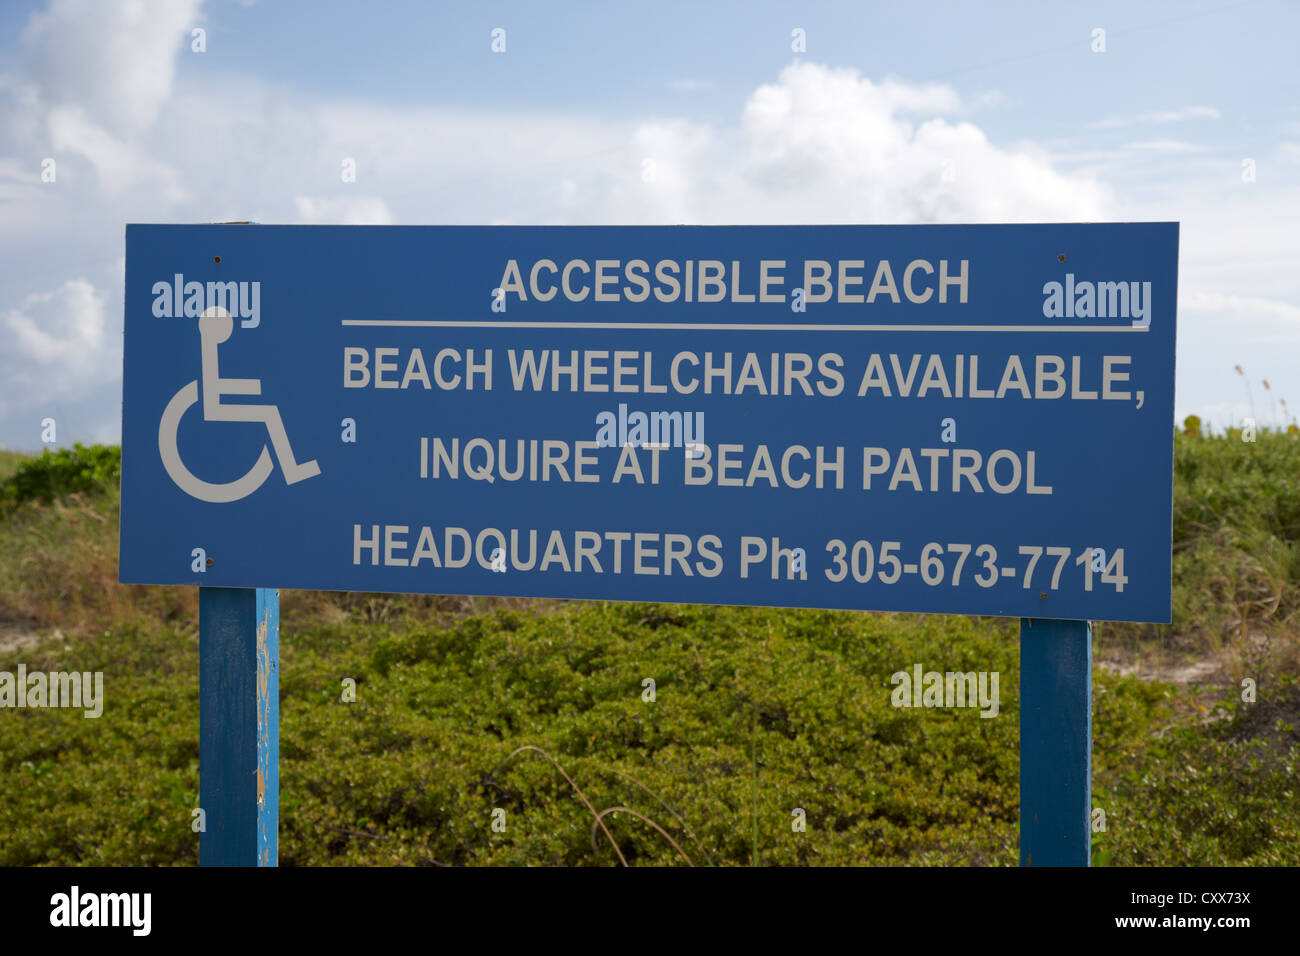 accessible beach sign miami south beach florida usa Stock Photo